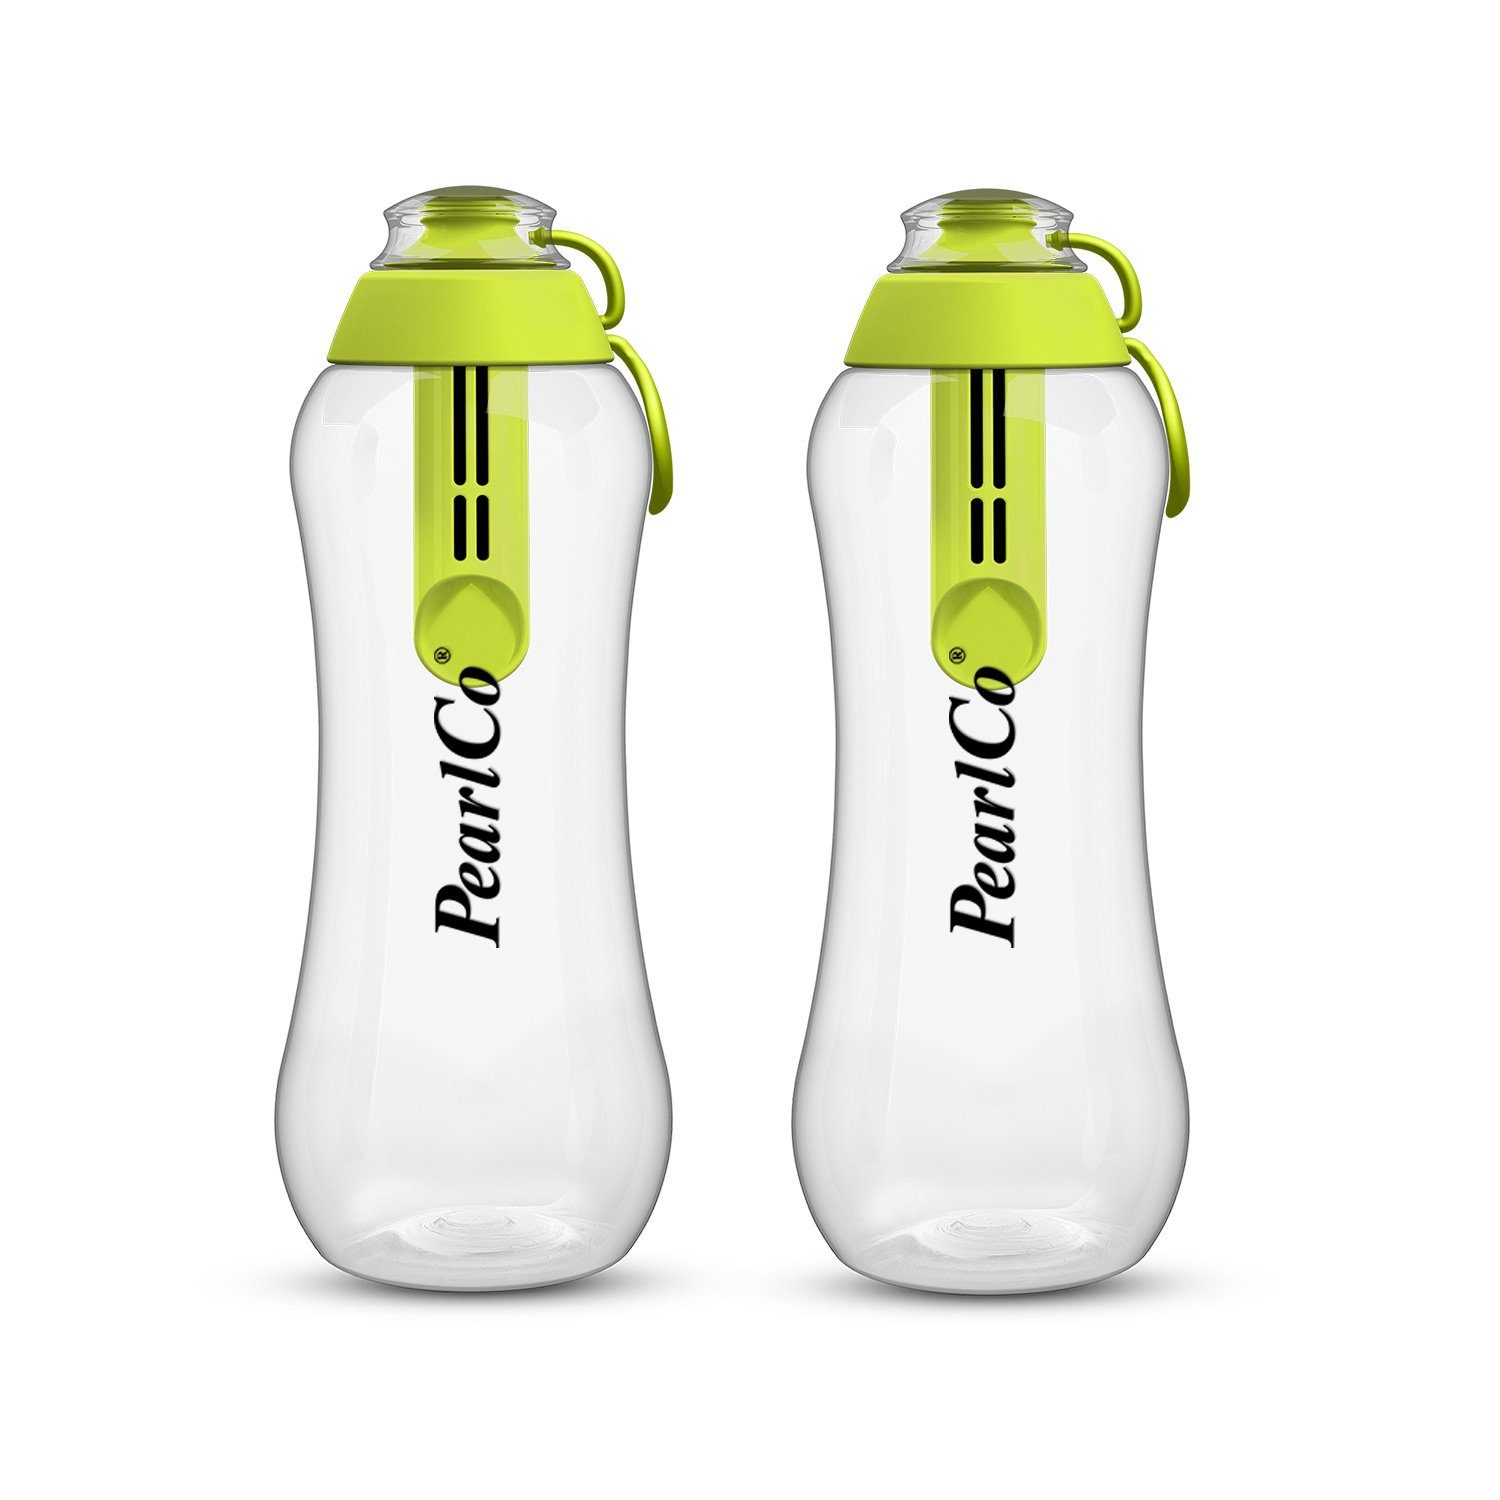 Filter Trinkflasche Zwei grün Liter Trinkflaschen PearlCo mit 0,7